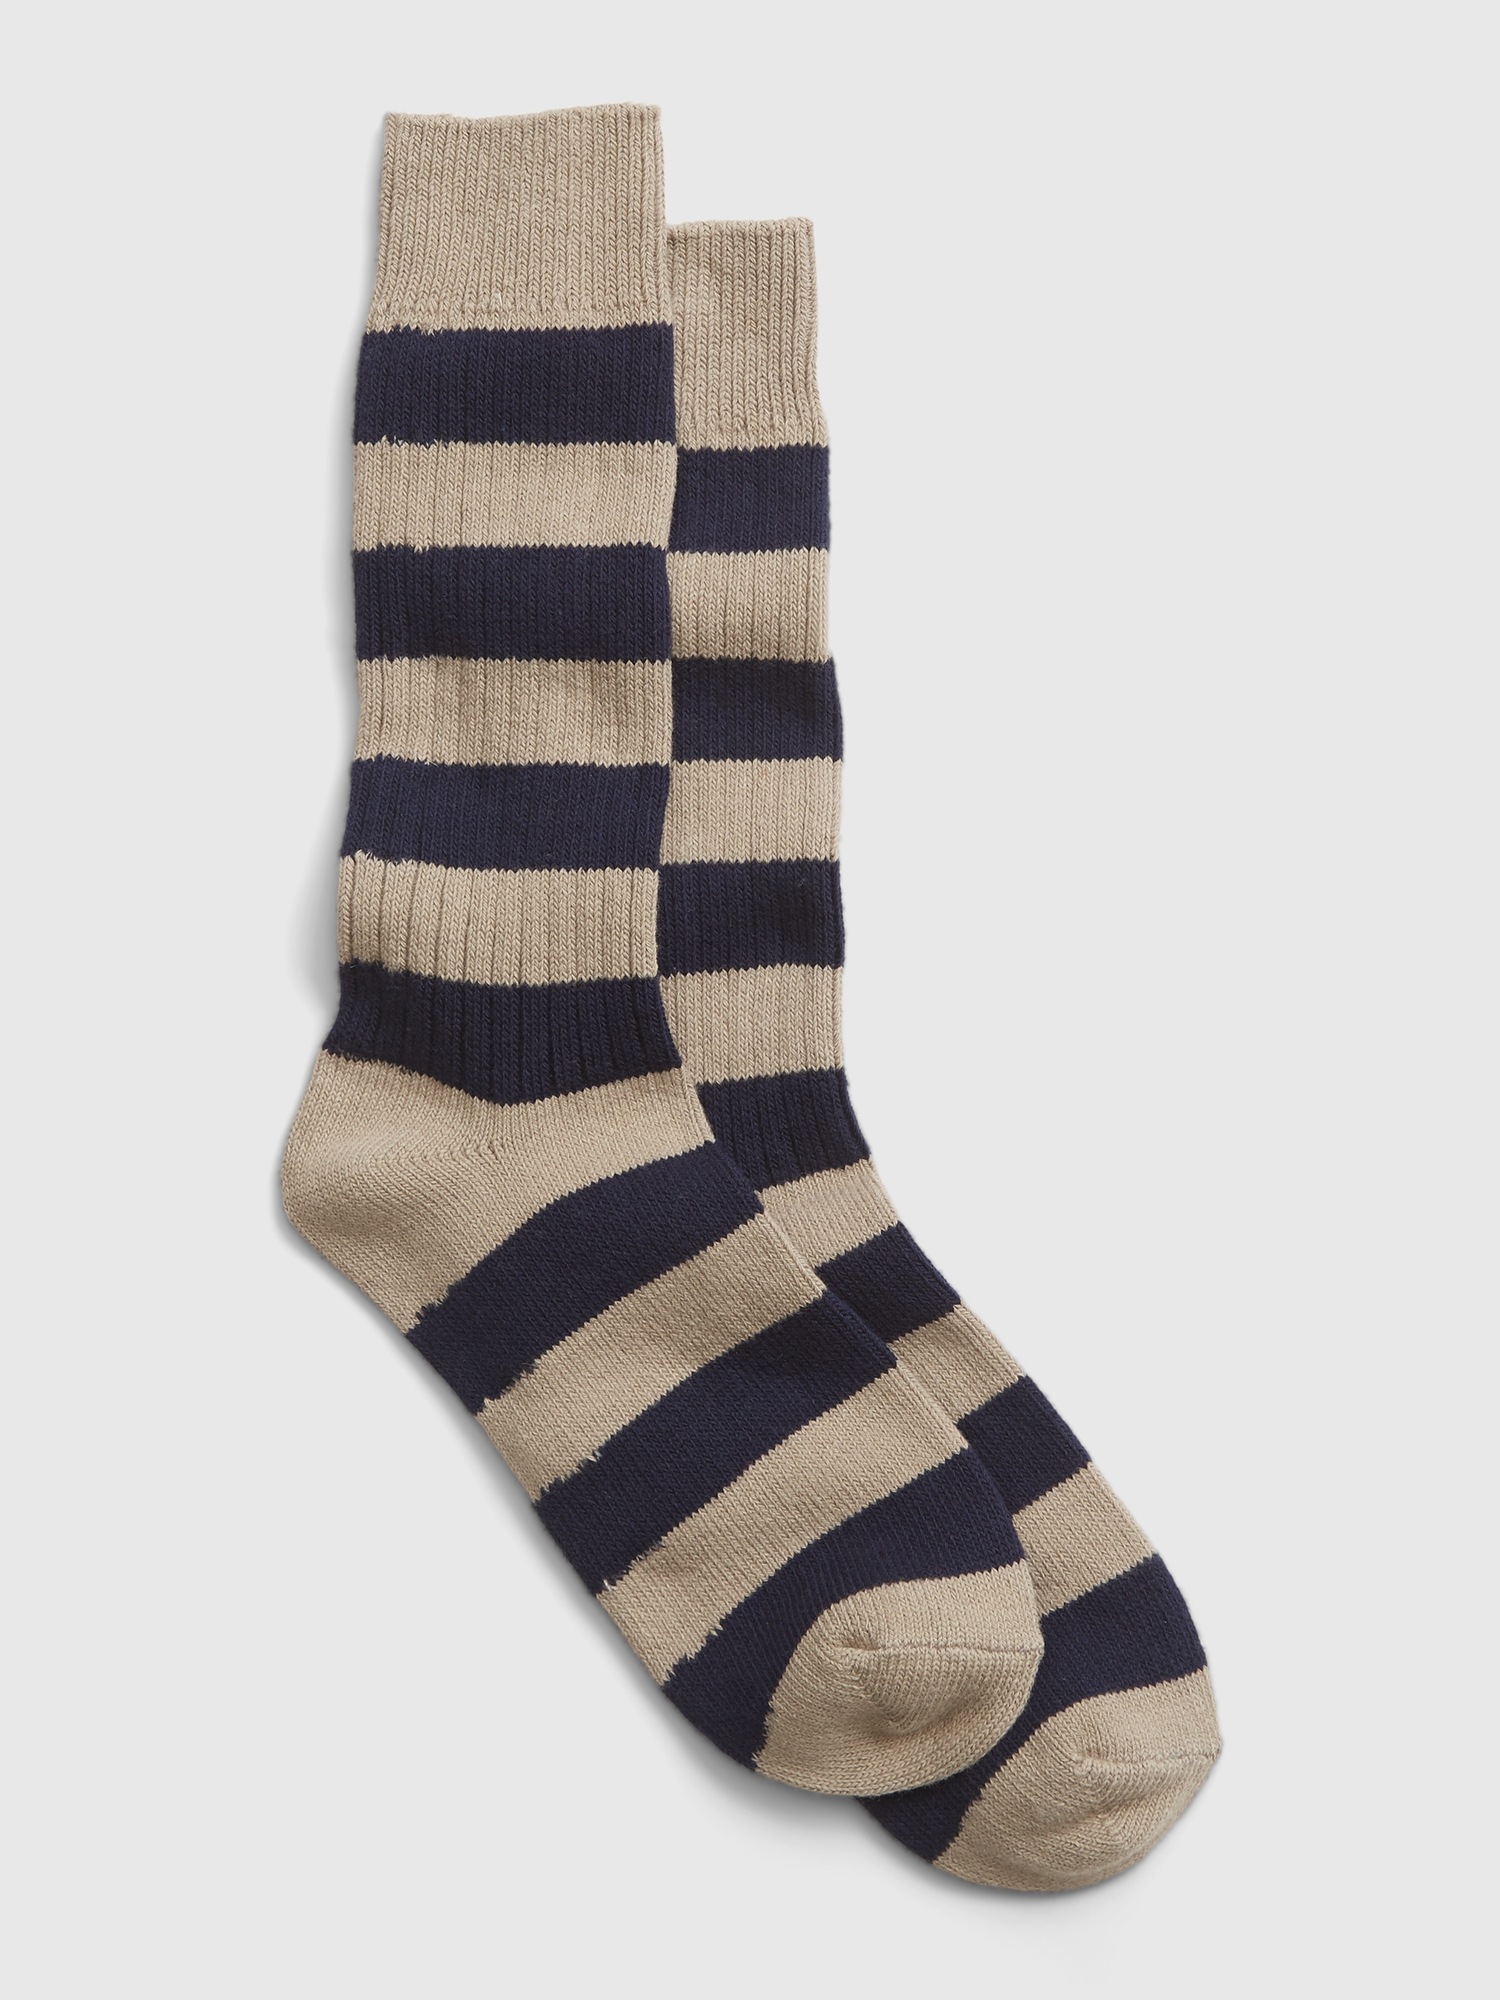 Stripe Crew Socks